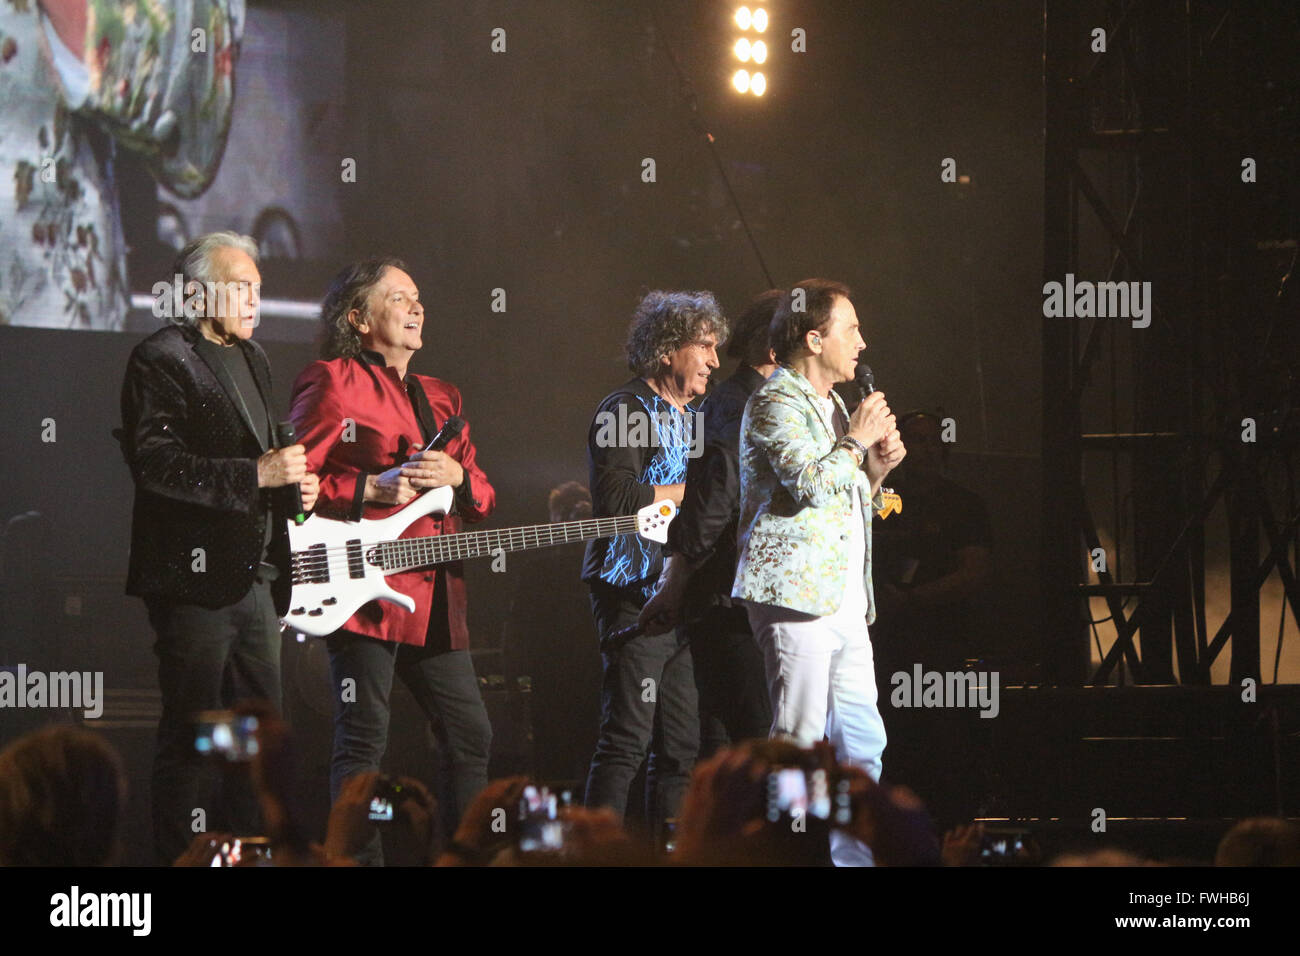 Milano, Italia. Undicesimo Jun, 2016. Rock band italiana Pooh in scena a Milano, Italia. Credito: Luca Quadrio/Alamy Live News. Foto Stock